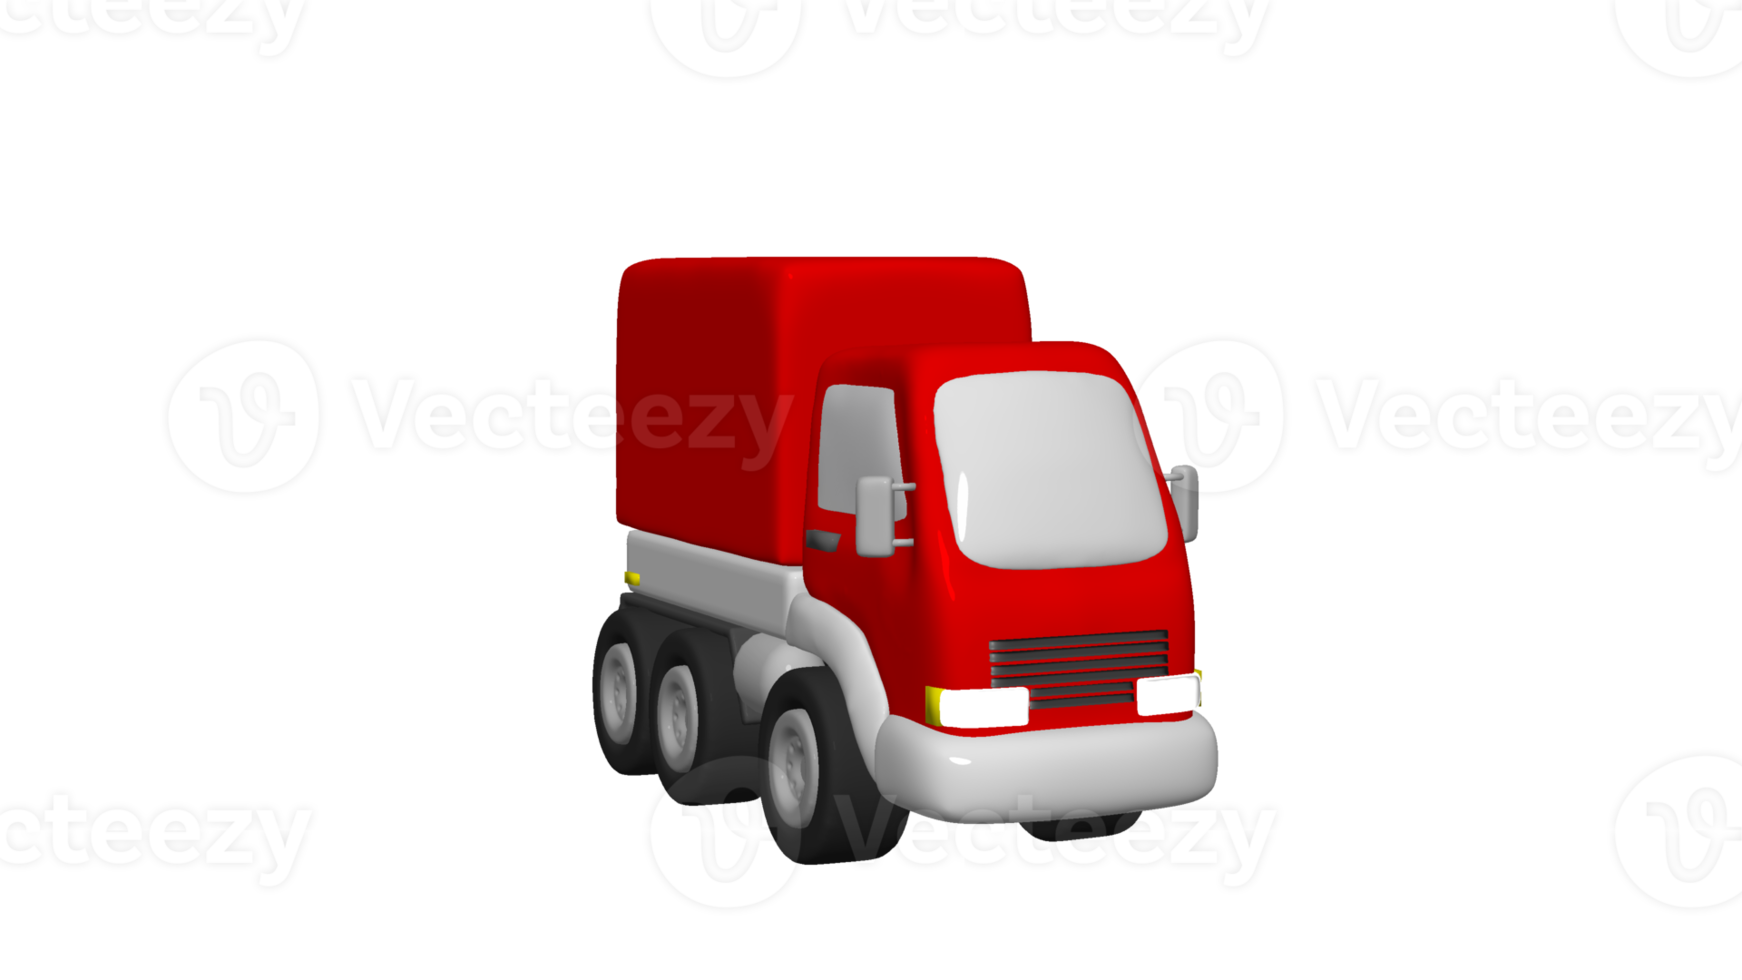 camion de livraison dessin animé 3d png